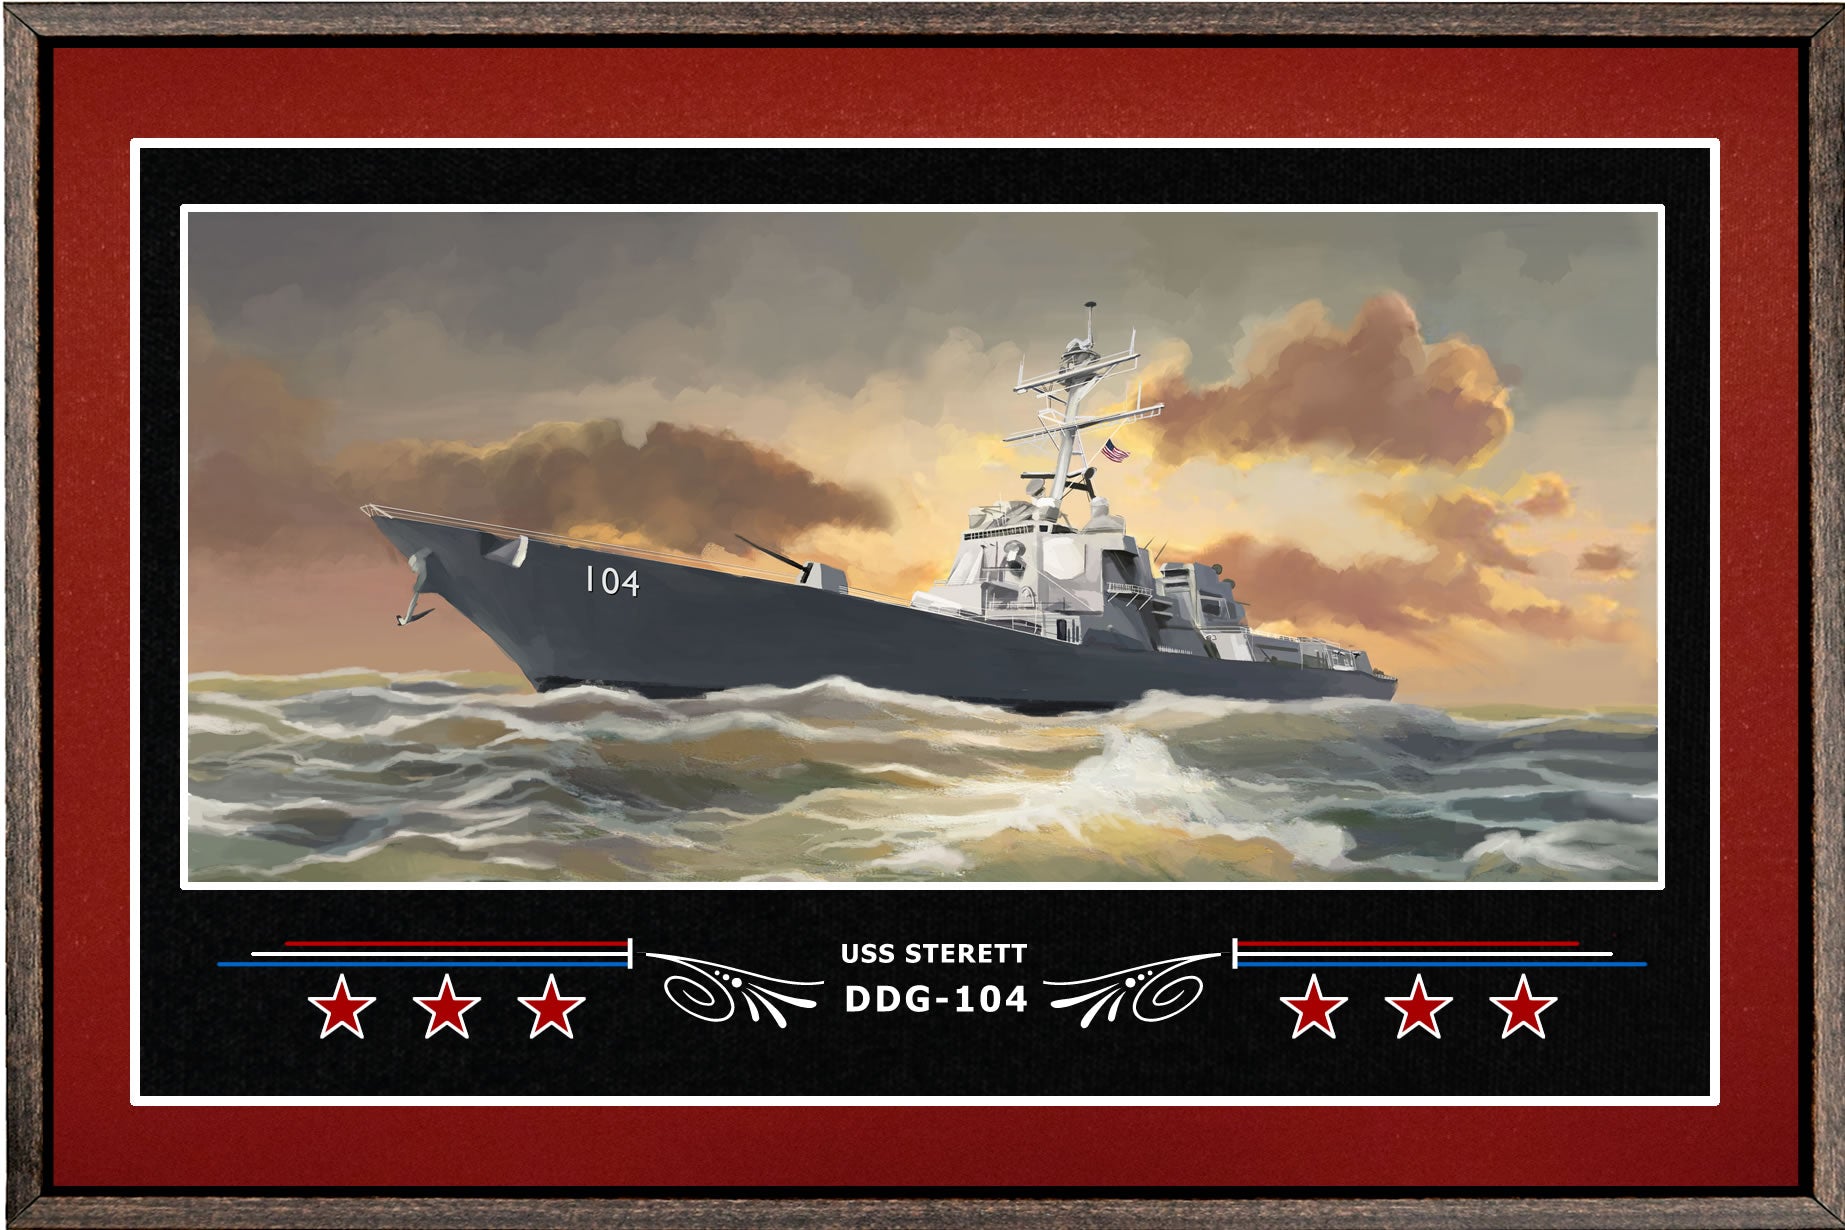 USS STERETT DDG 104 BOX FRAMED CANVAS ART BURGUNDY